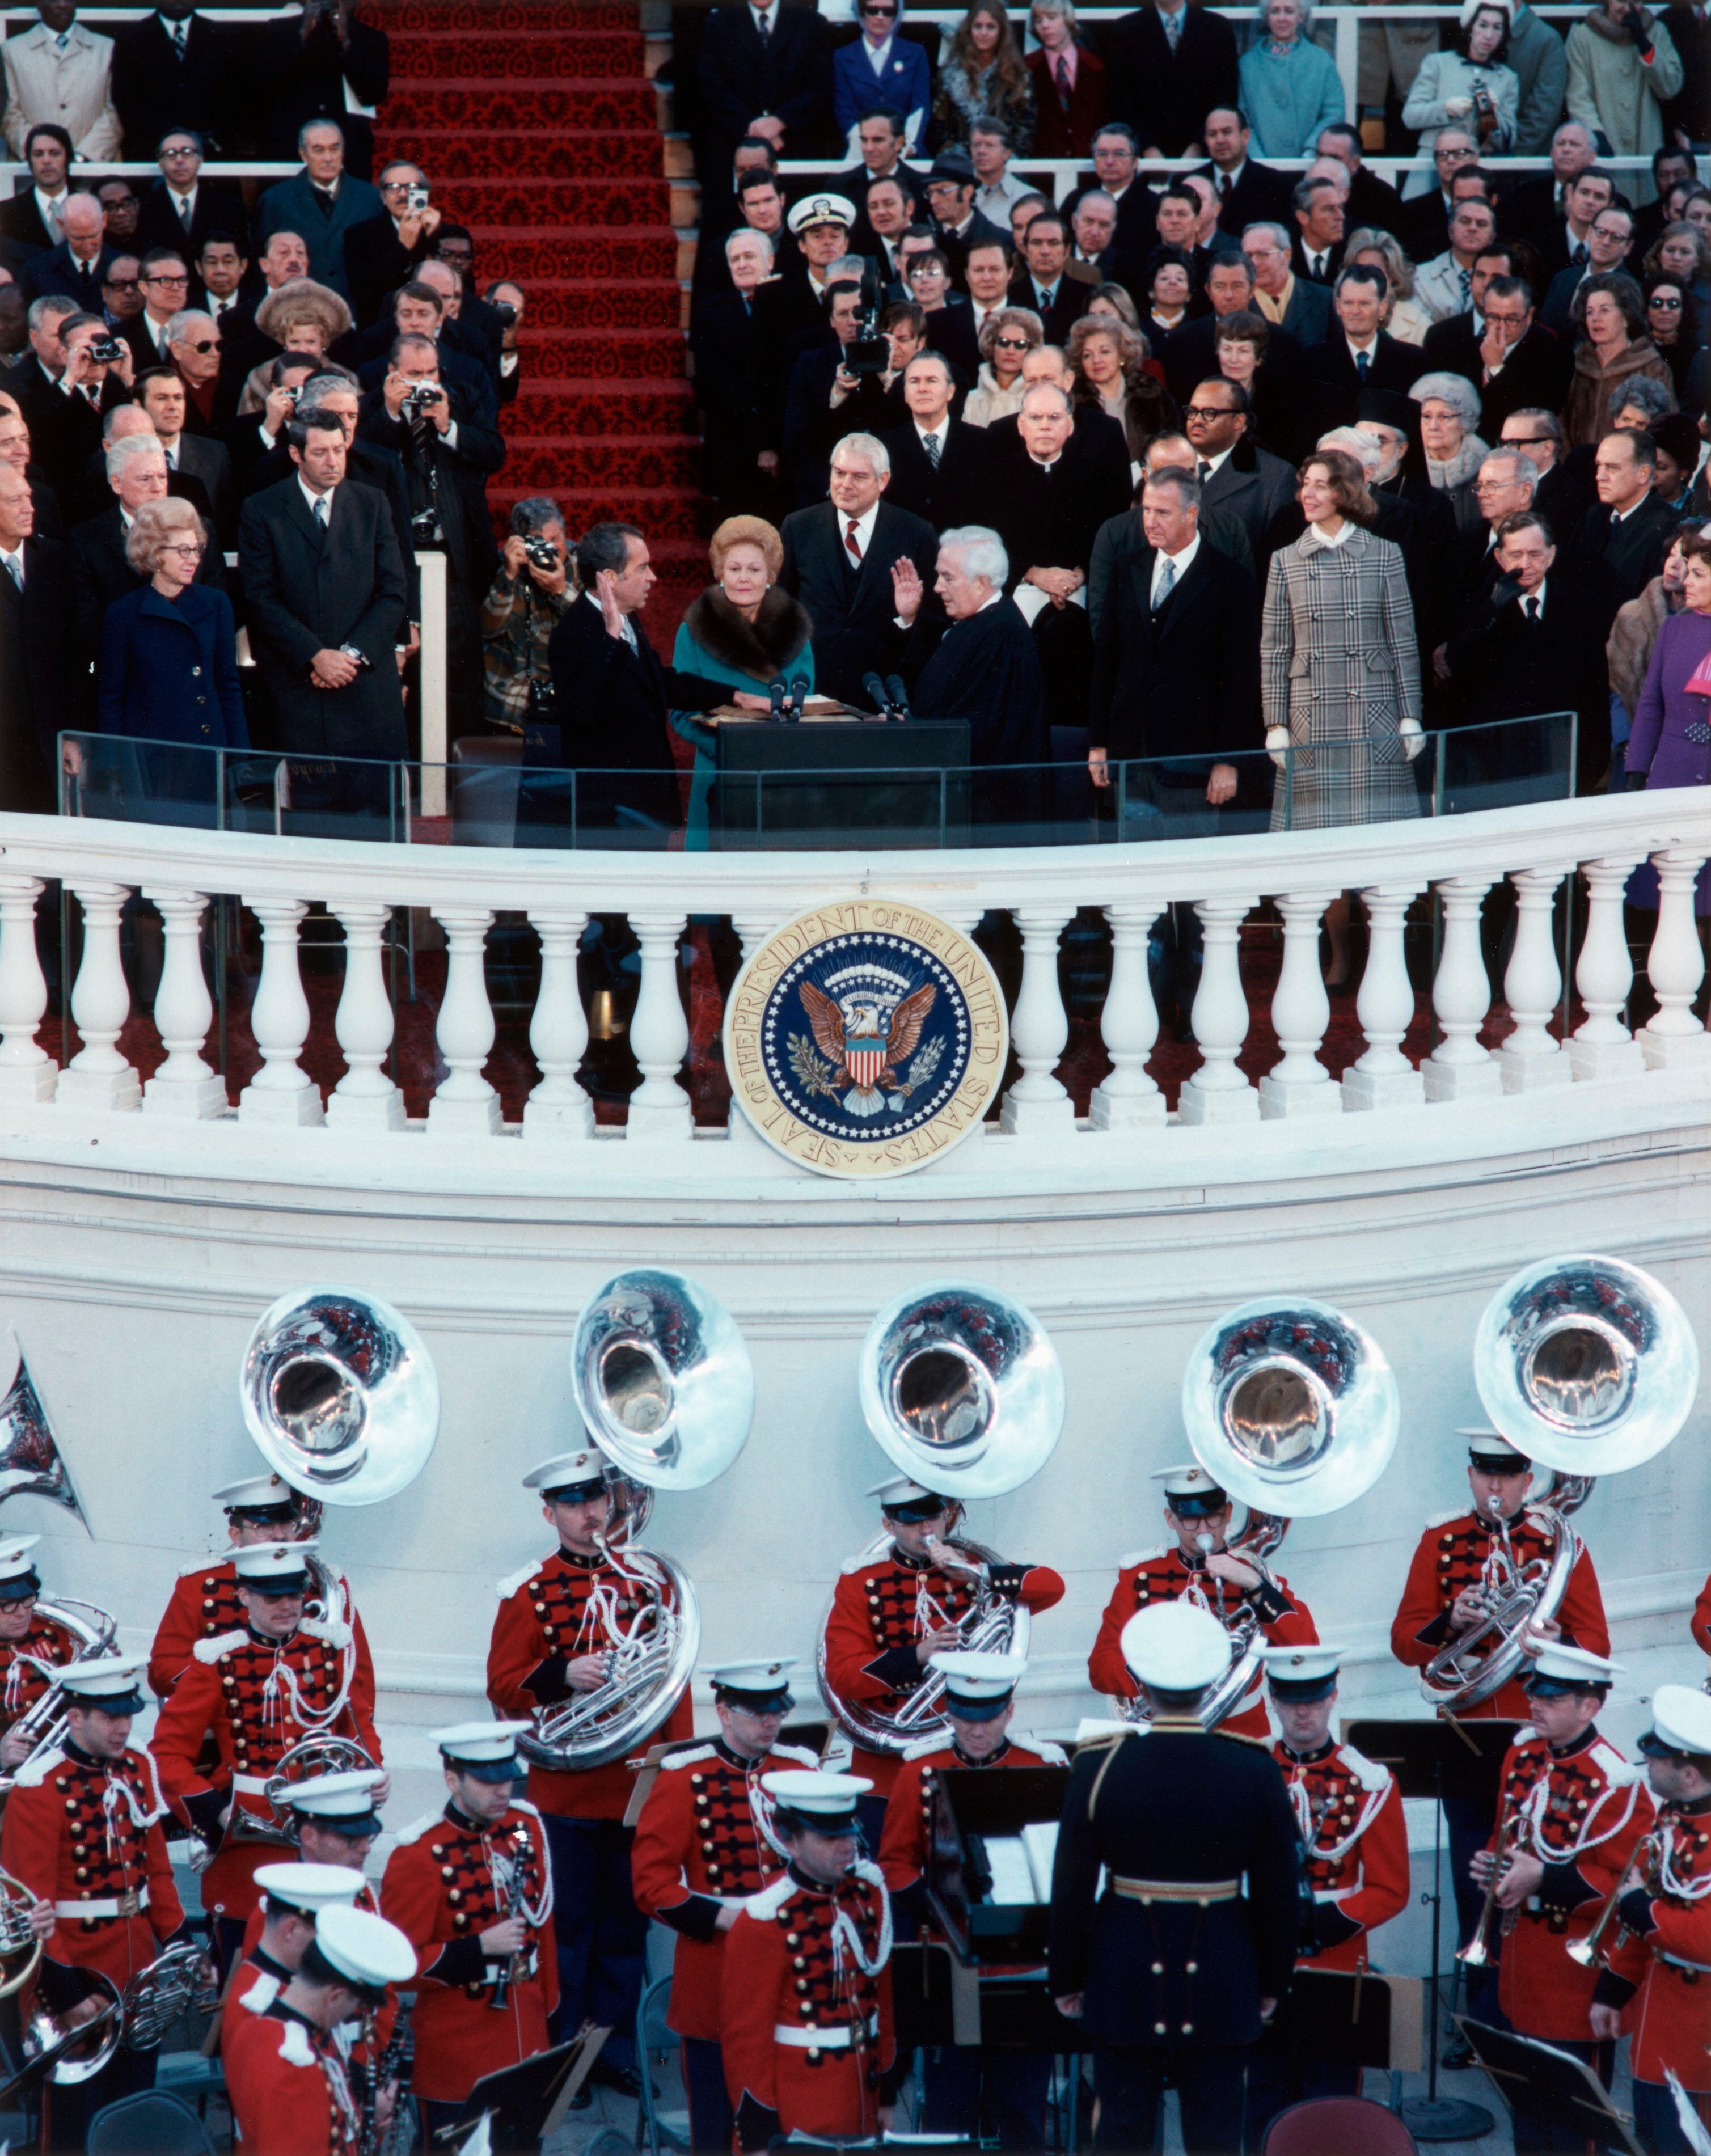 El presidente Richard Nixon jura su cargo, con su esposa Pat a su lado, en la ceremonia inaugural de su presidencia, en enero de 1973 en Washington.